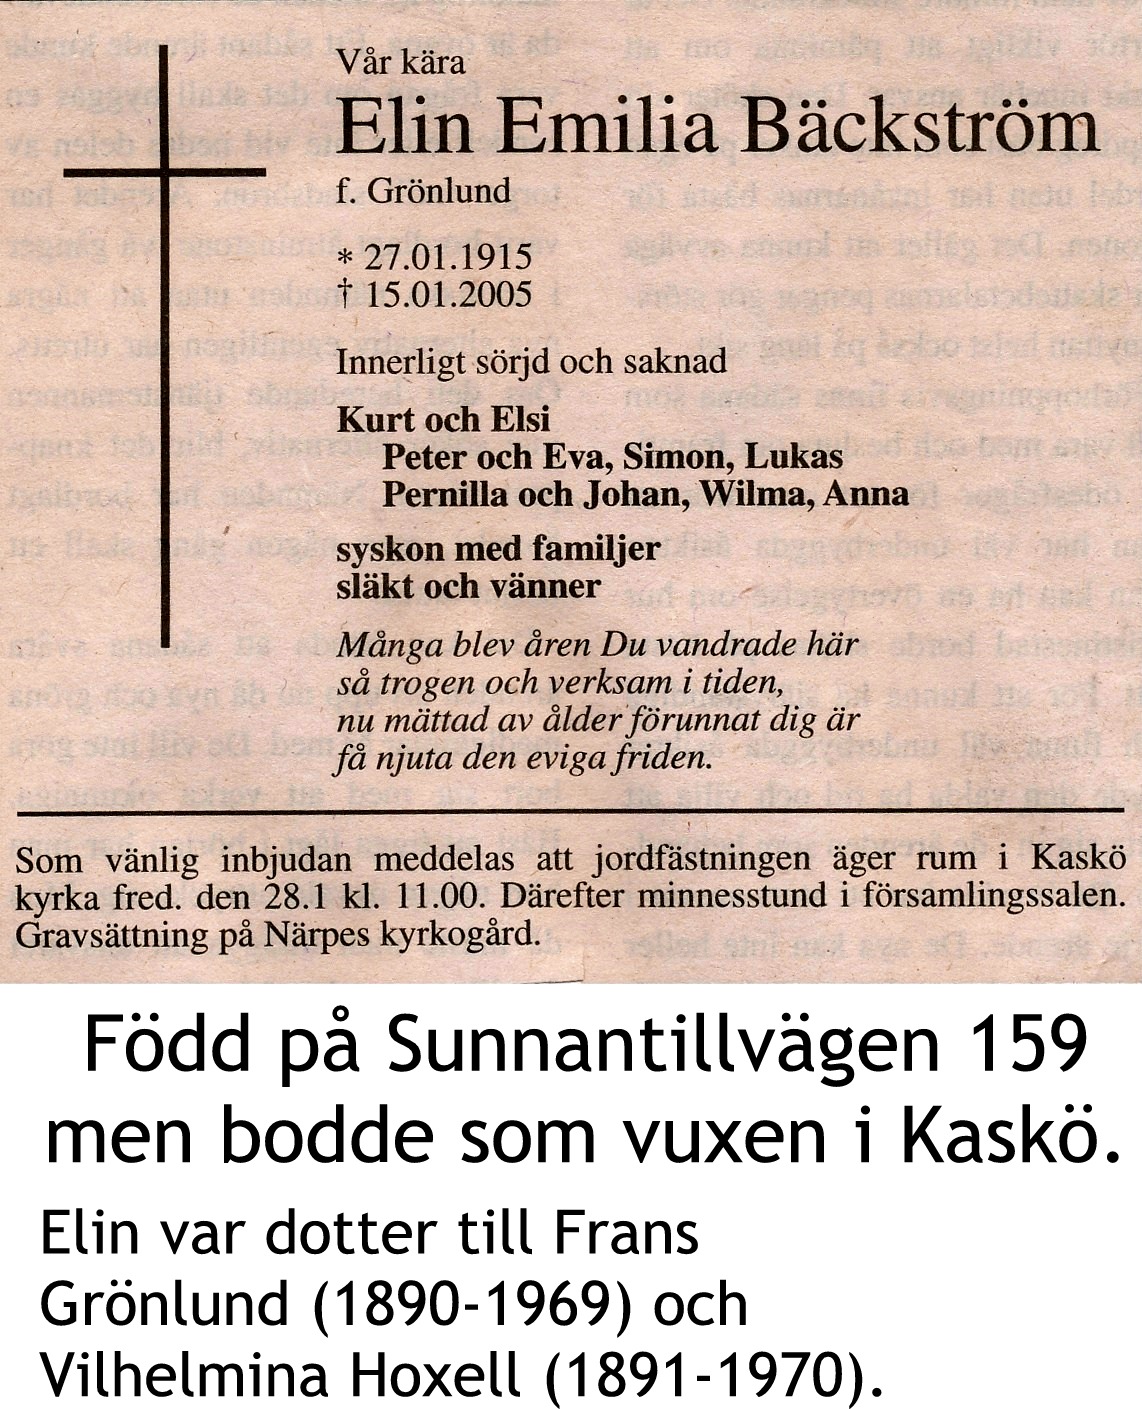 Bäckström Elin, f. Grönlund